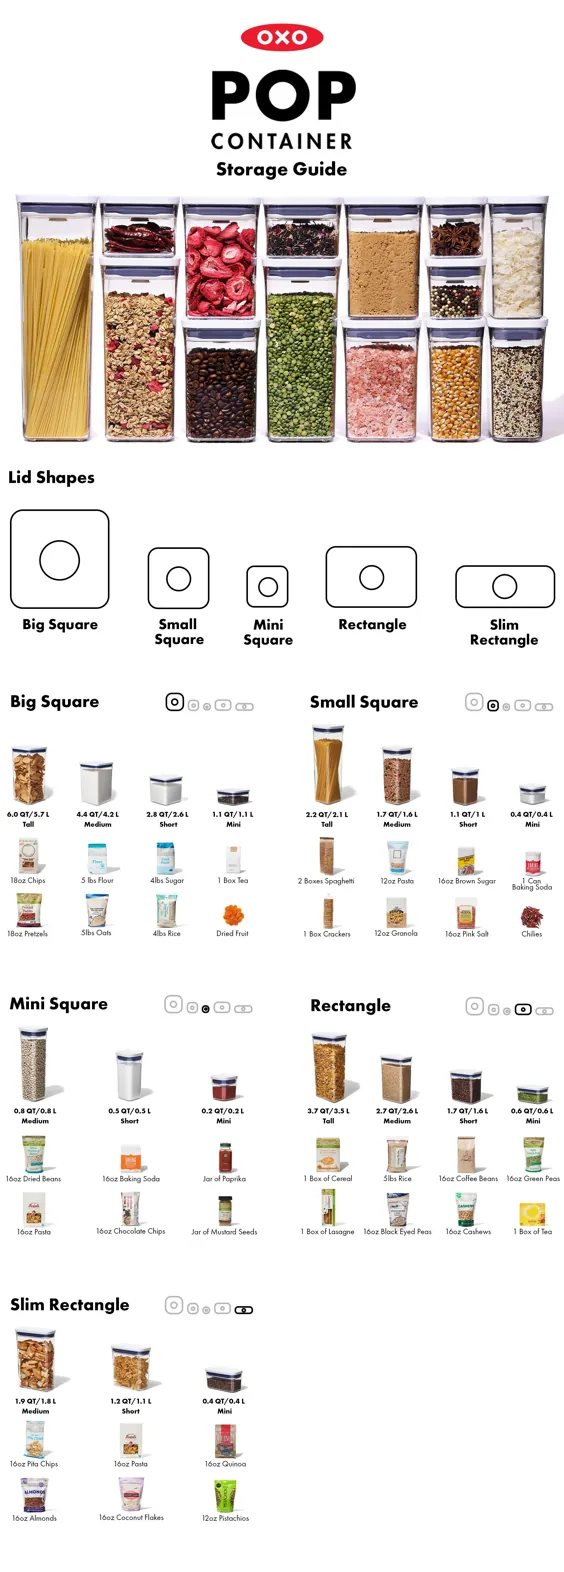 راهنمای ظروف OXO POP - نحوه استفاده از ظروف ذخیره سازی مواد غذایی خشک